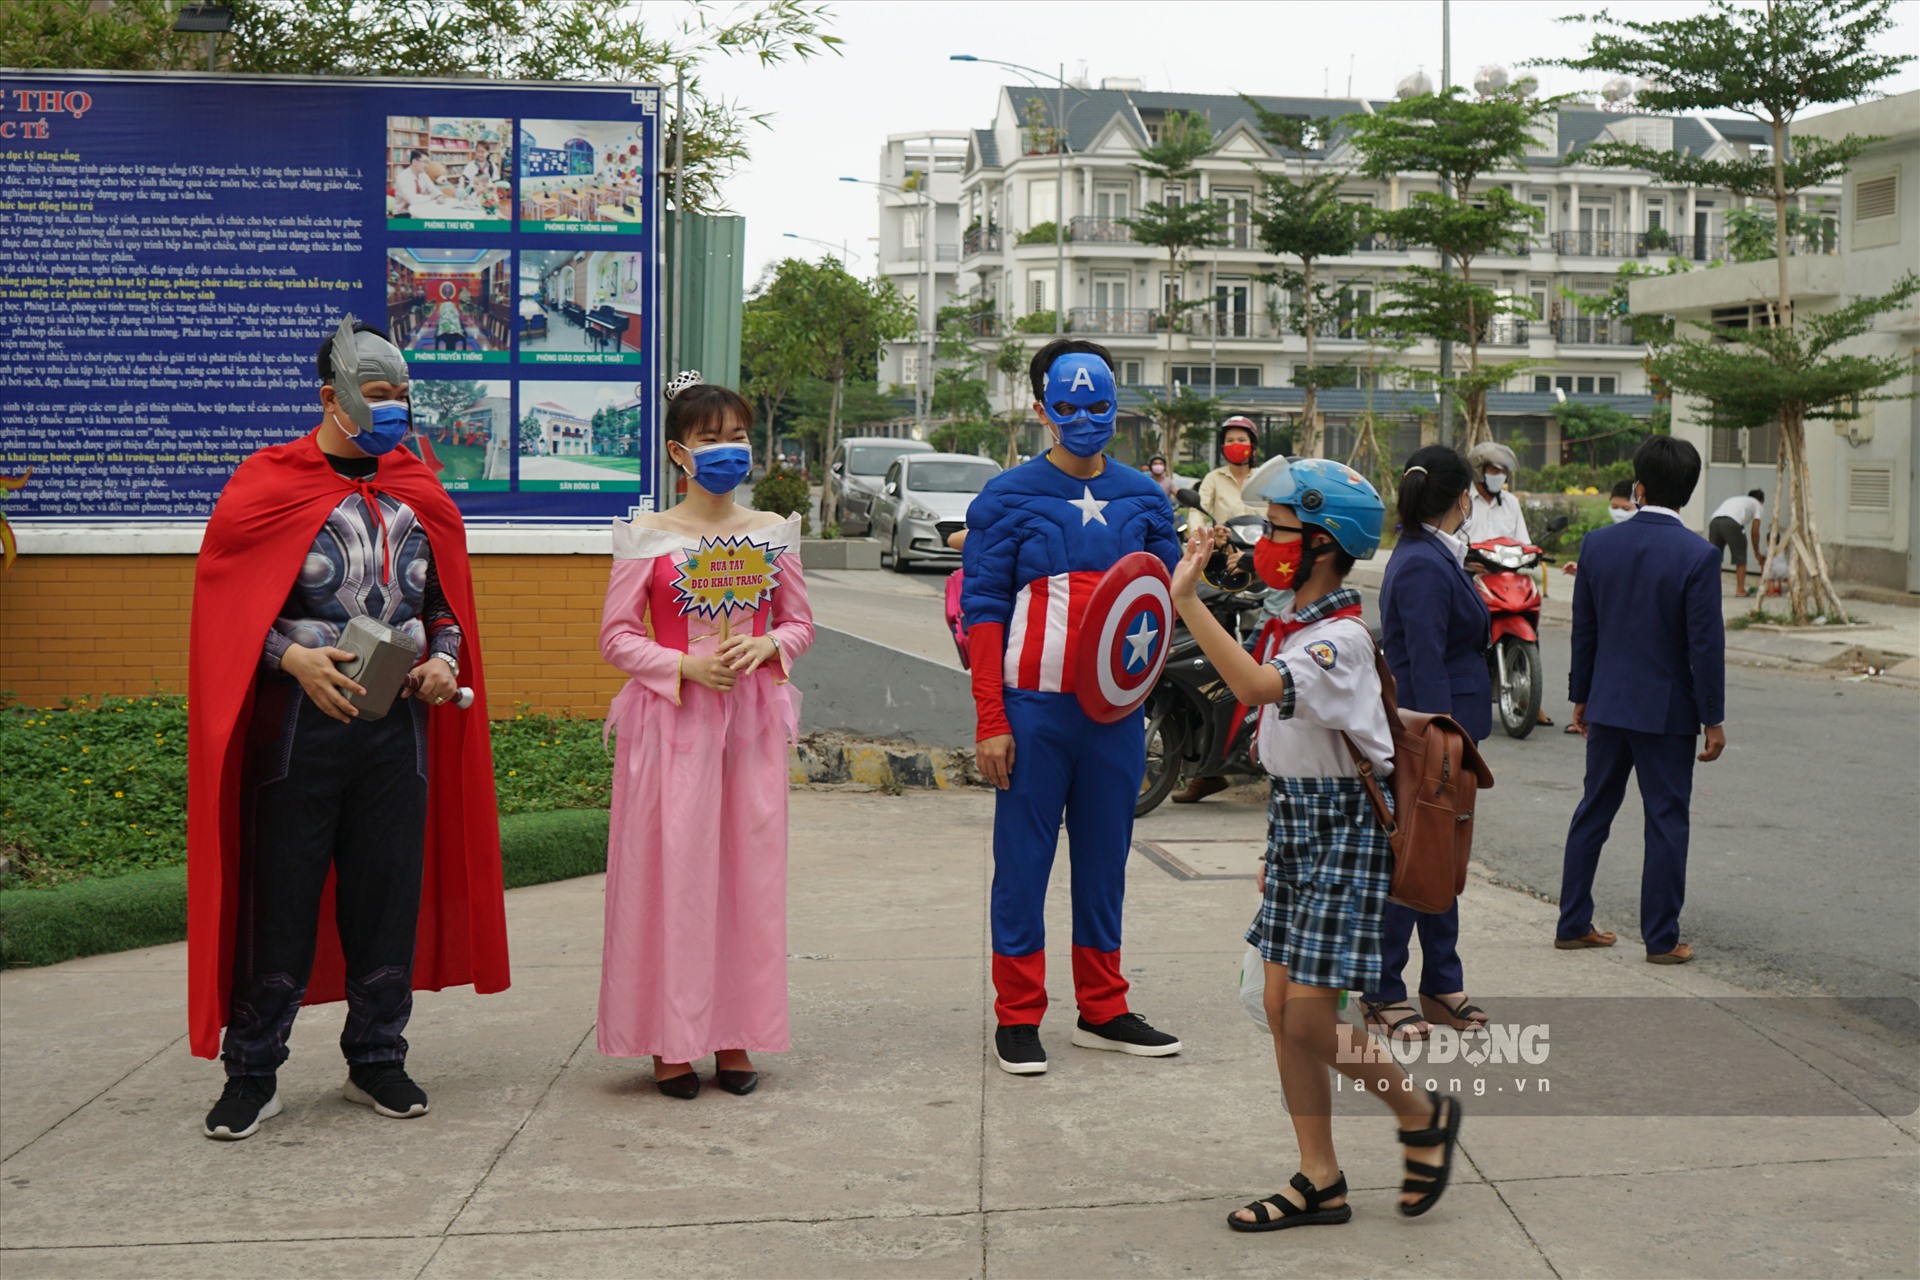 Với mong muốn chào mừng, truyền cảm hứng cho các em học sinh trở lại trường học, một số thầy cô trong trường đã hoá thân thành nhân vật hoạt hình: nàng Bạch Tuyết, Captain America, Thor... đứng ở cổng trường đón các em.